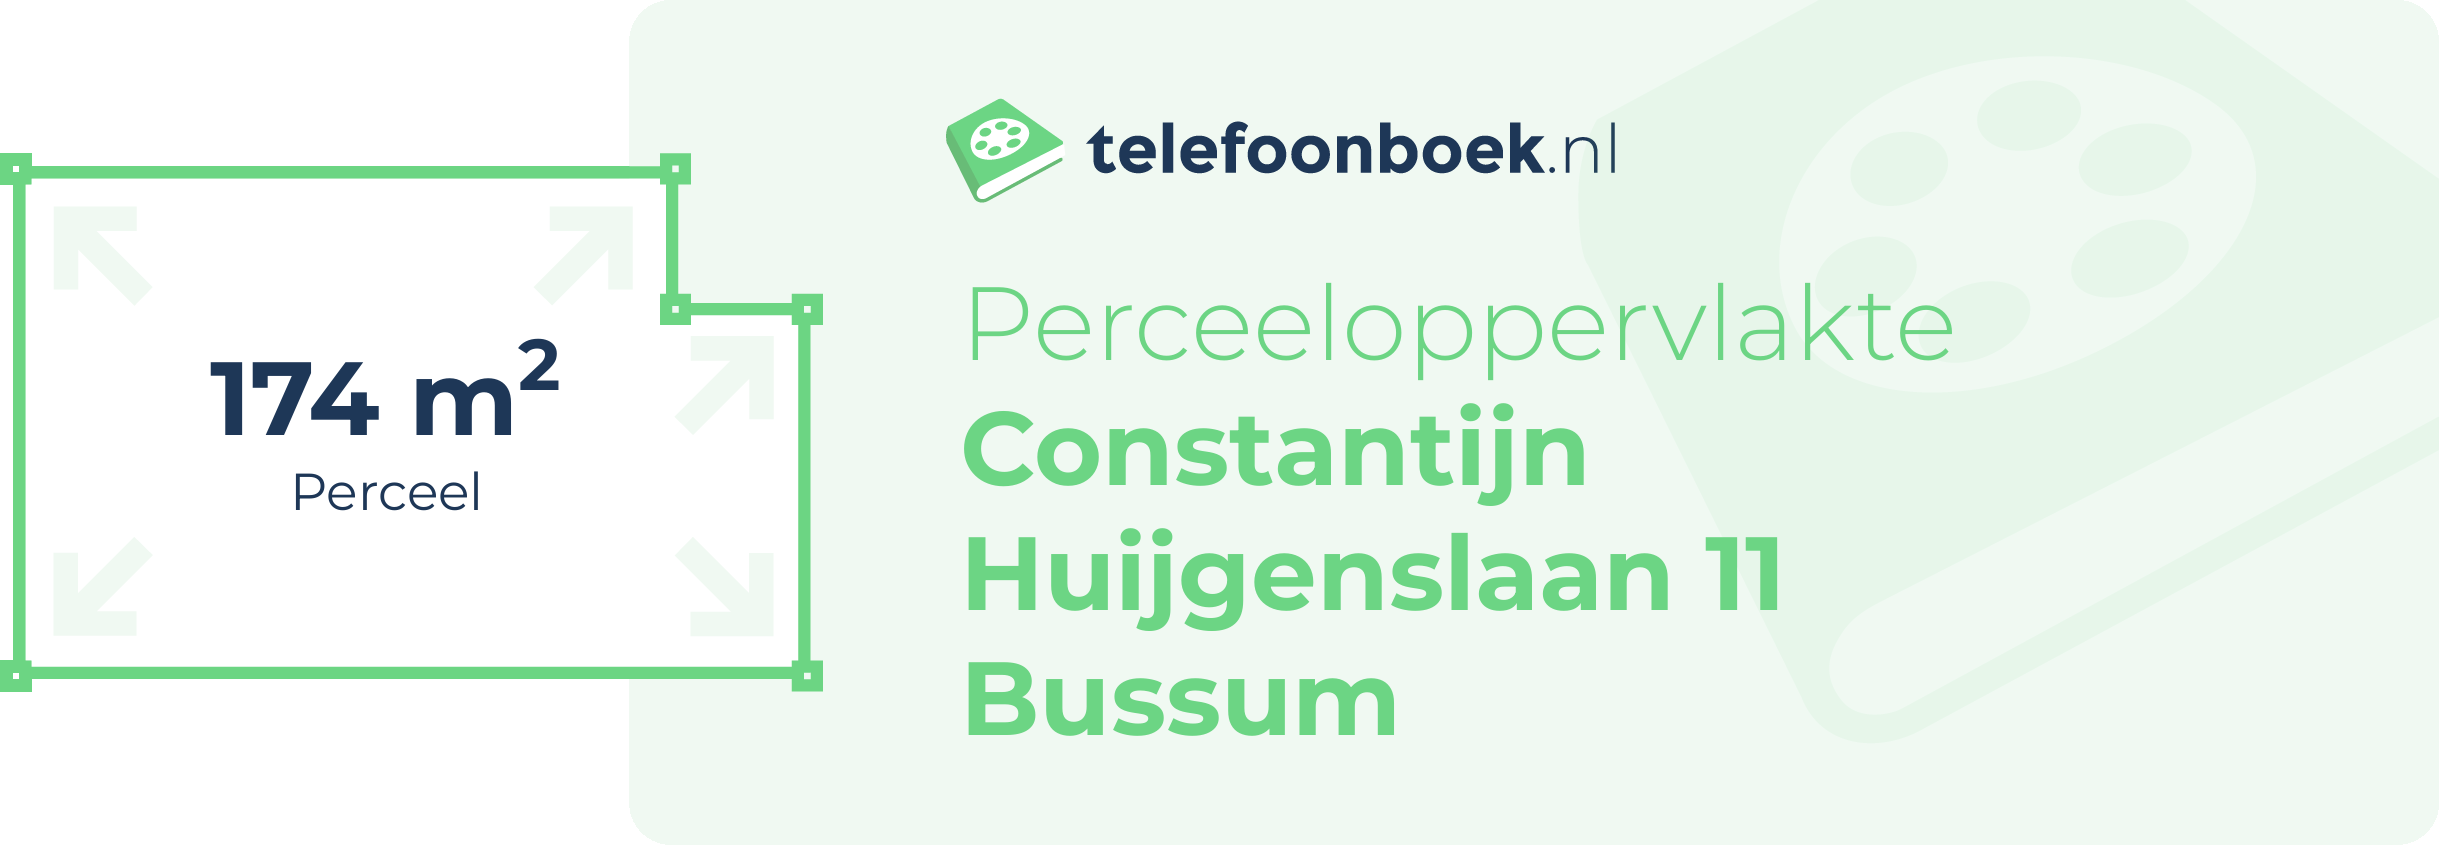 Perceeloppervlakte Constantijn Huijgenslaan 11 Bussum